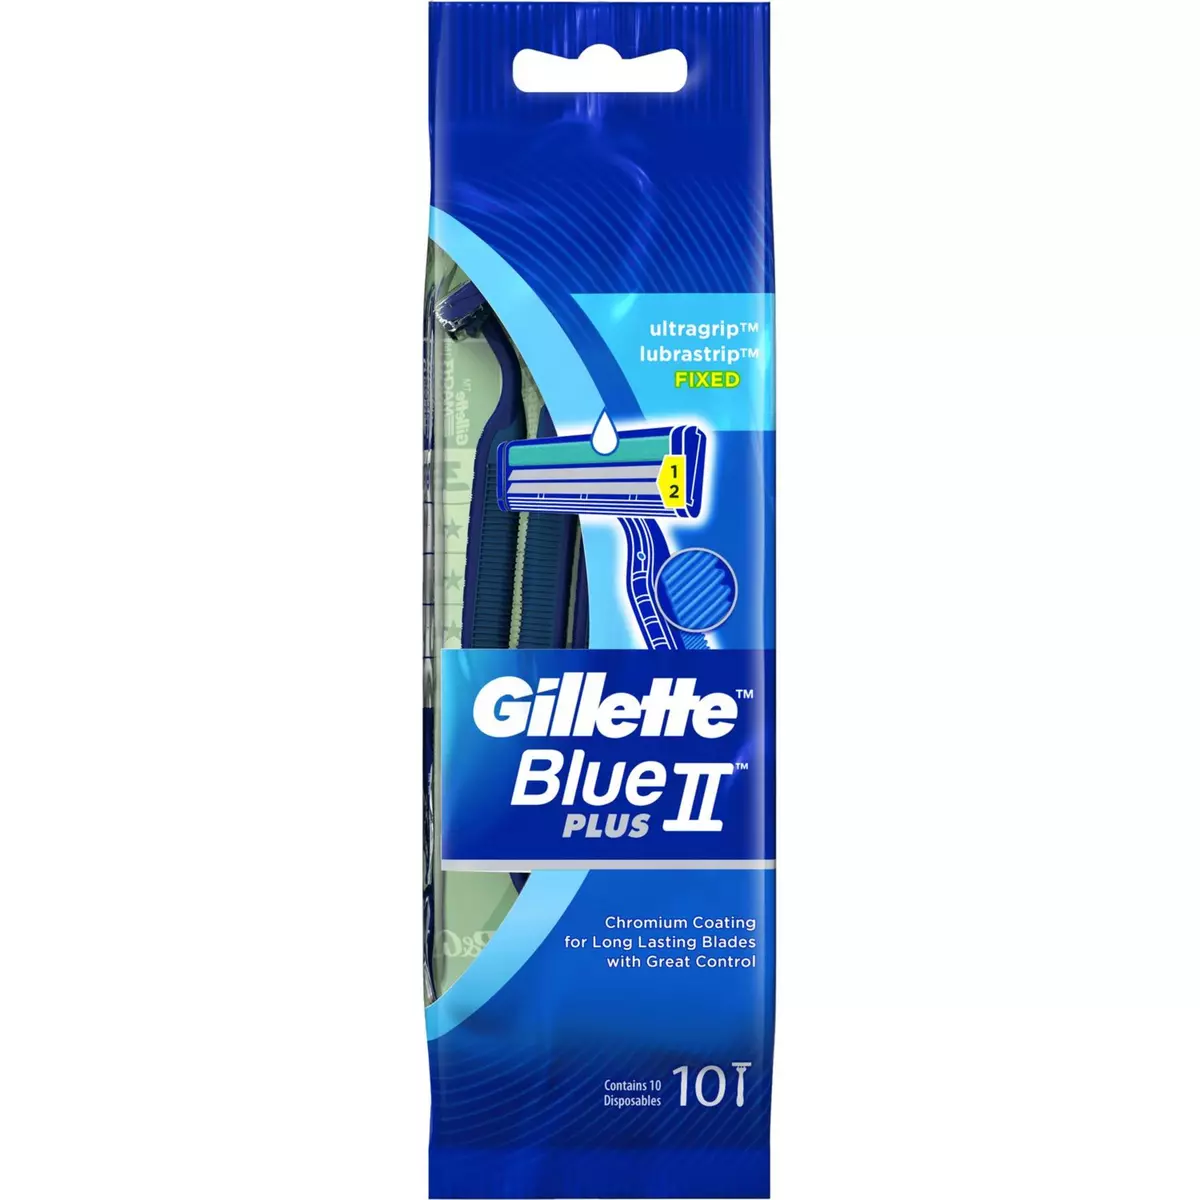 GILLETTE Blue 2 Plus rasoirs jetables ultra lubrifié 10 rasoirs